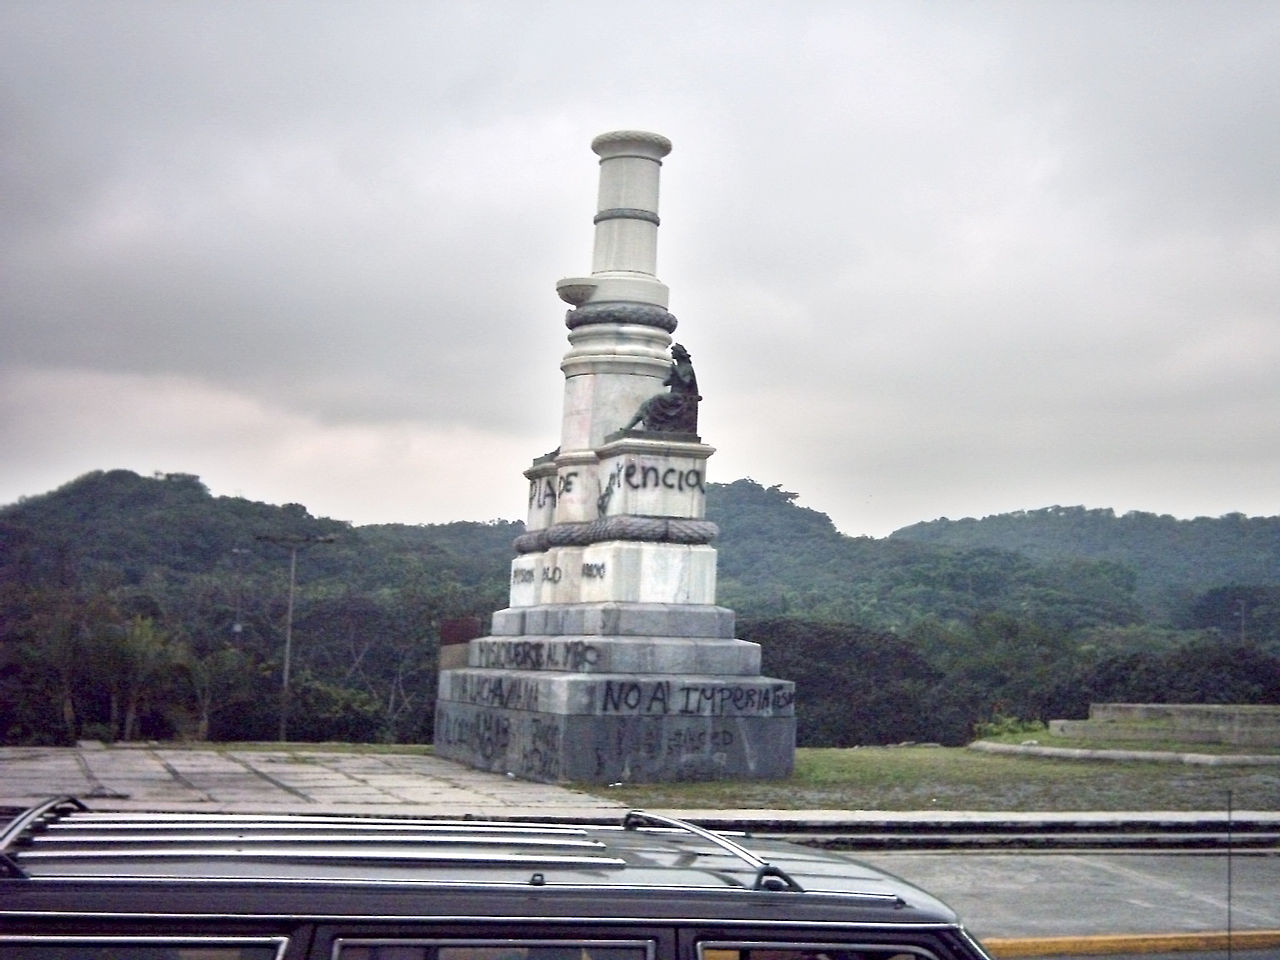 Monumento a Colón en el Golfo triste, sin la estatua centenaria del maestro Rafael de la Cova. Foto Oscar / Wikipedia. Dominio público.